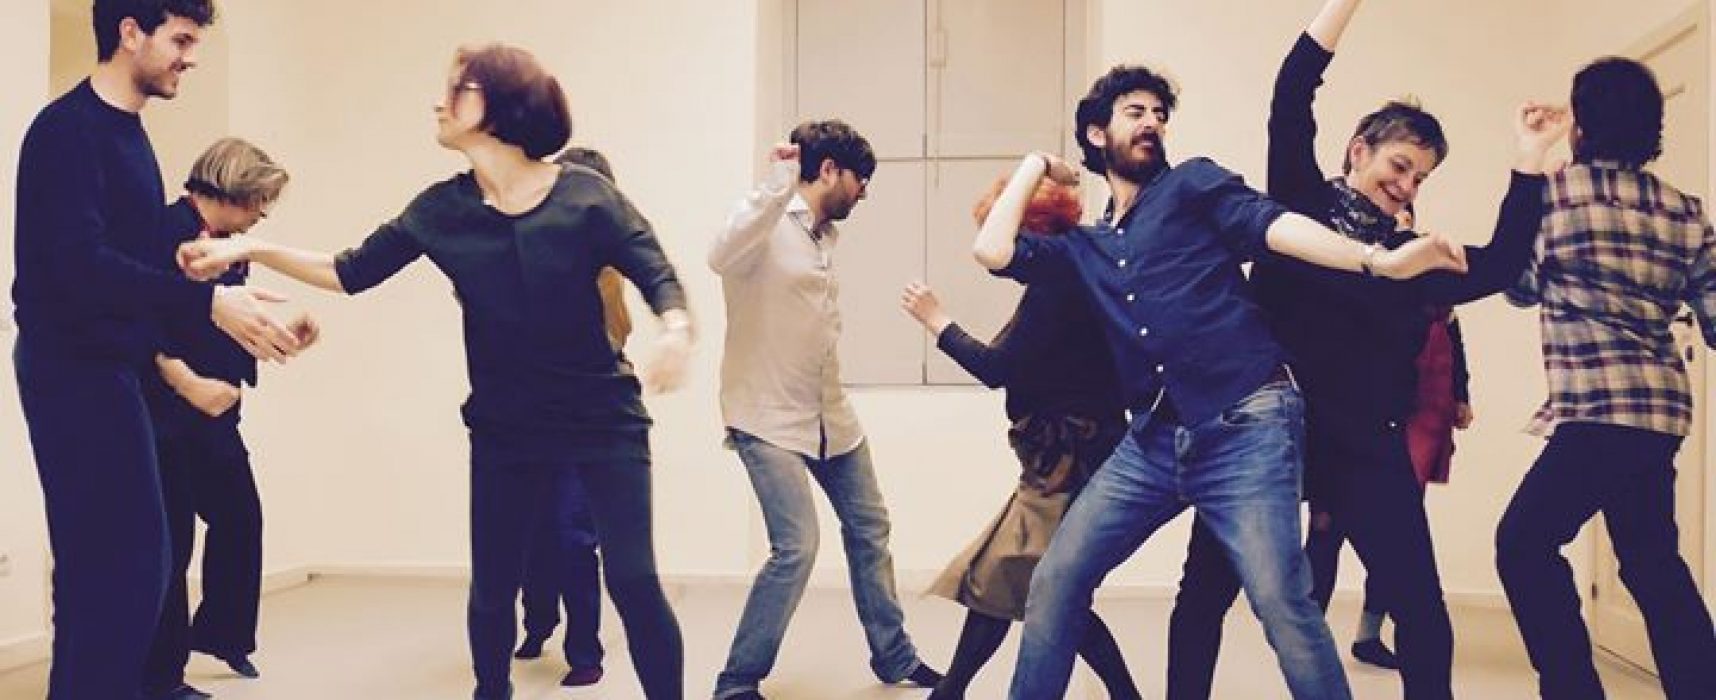 La compagnia Sonenalè cerca 10 aspiranti danzatori per la performance “Lo spazio delle relazioni”